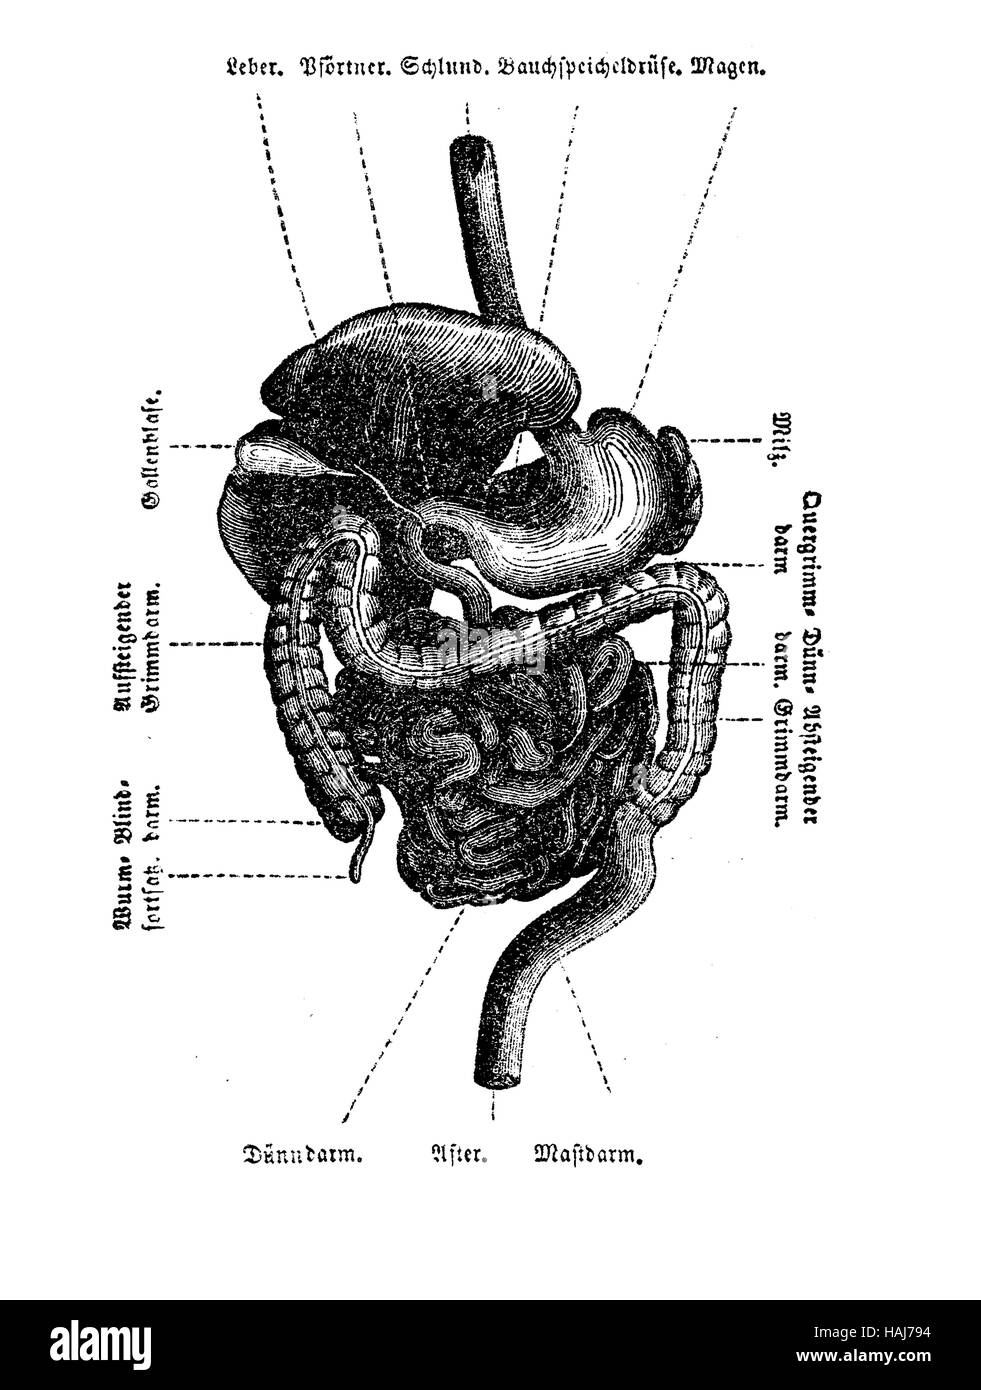 Colon humano dibujo anatomia Imágenes de stock en blanco y negro - Alamy